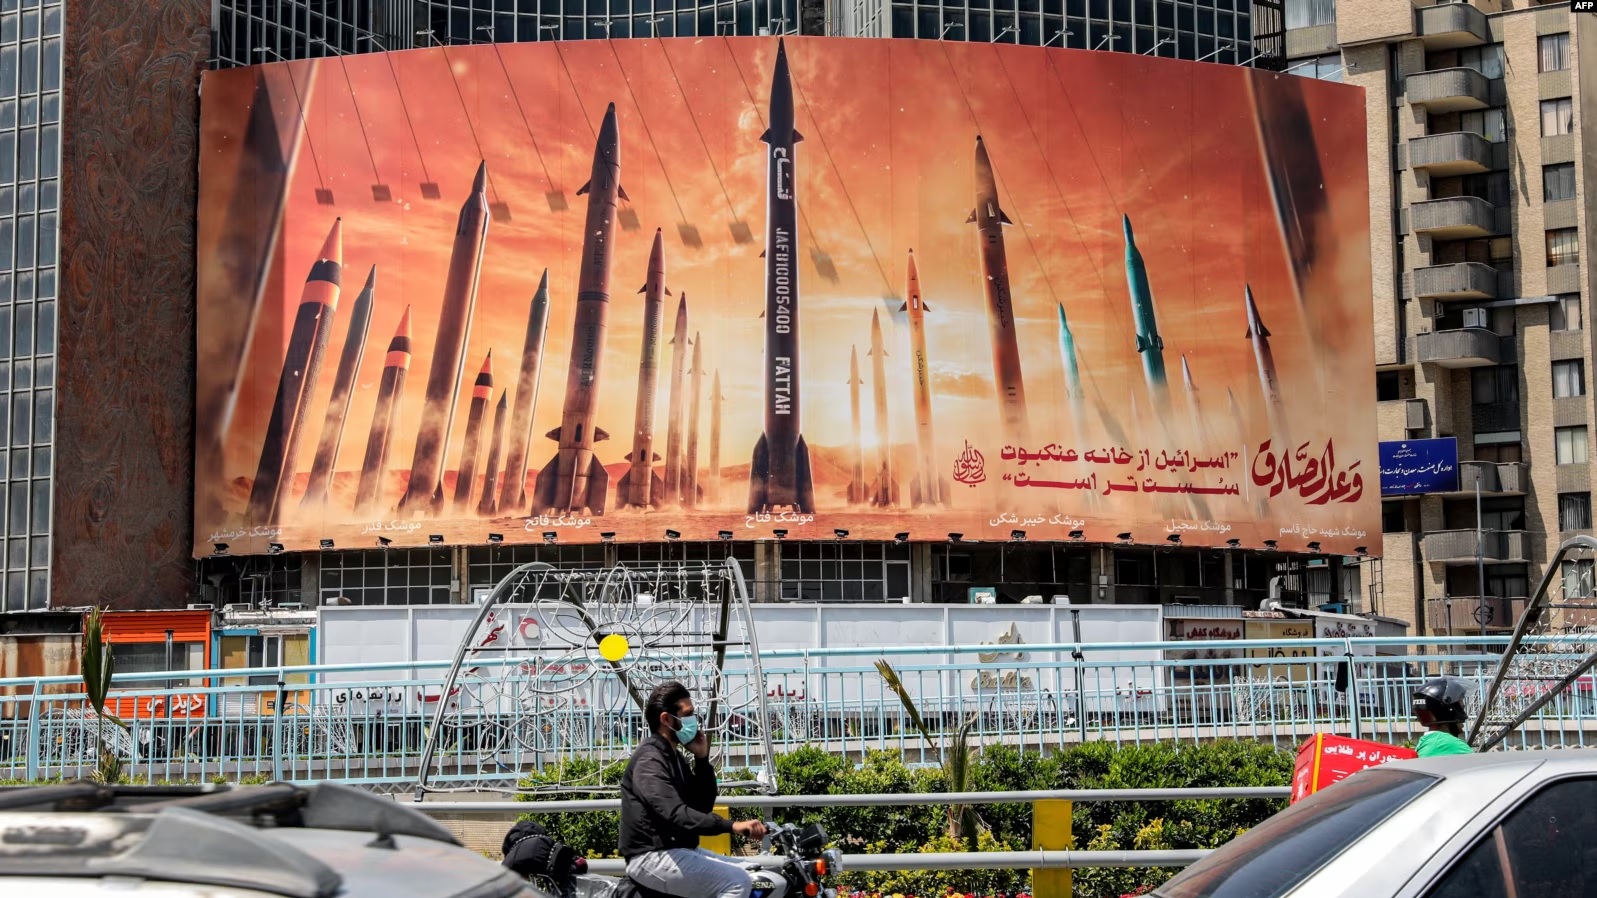 Një bilbord në Teheran, ku shfaqen raketa e ku shkruan "Izraeli është më i dobët sesa rrjeta e merimangave".